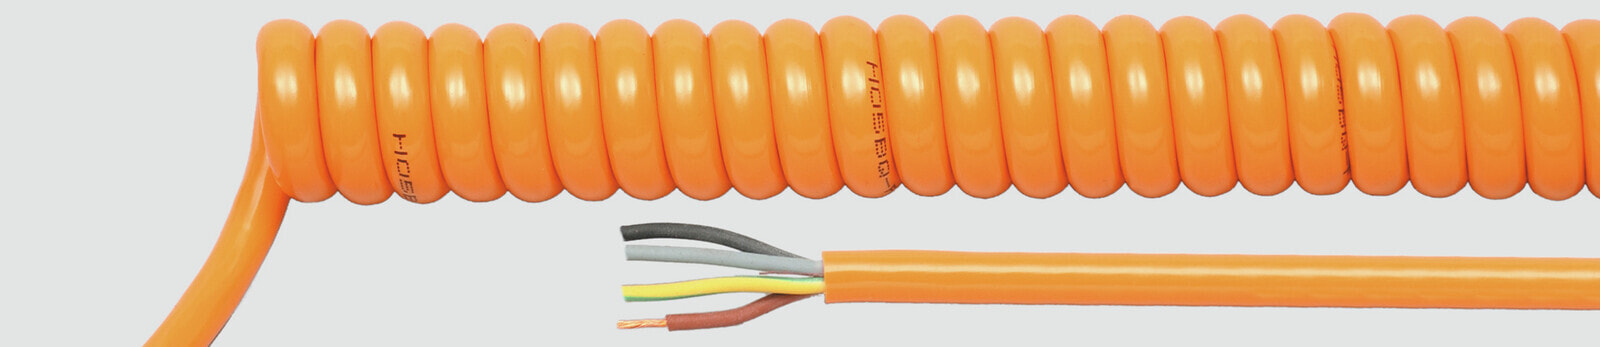 Helukabel 85425 - Low voltage cable - Orange - Cooper - 1.5 mm² - 343.4 kg/km - -25 - 70 °C